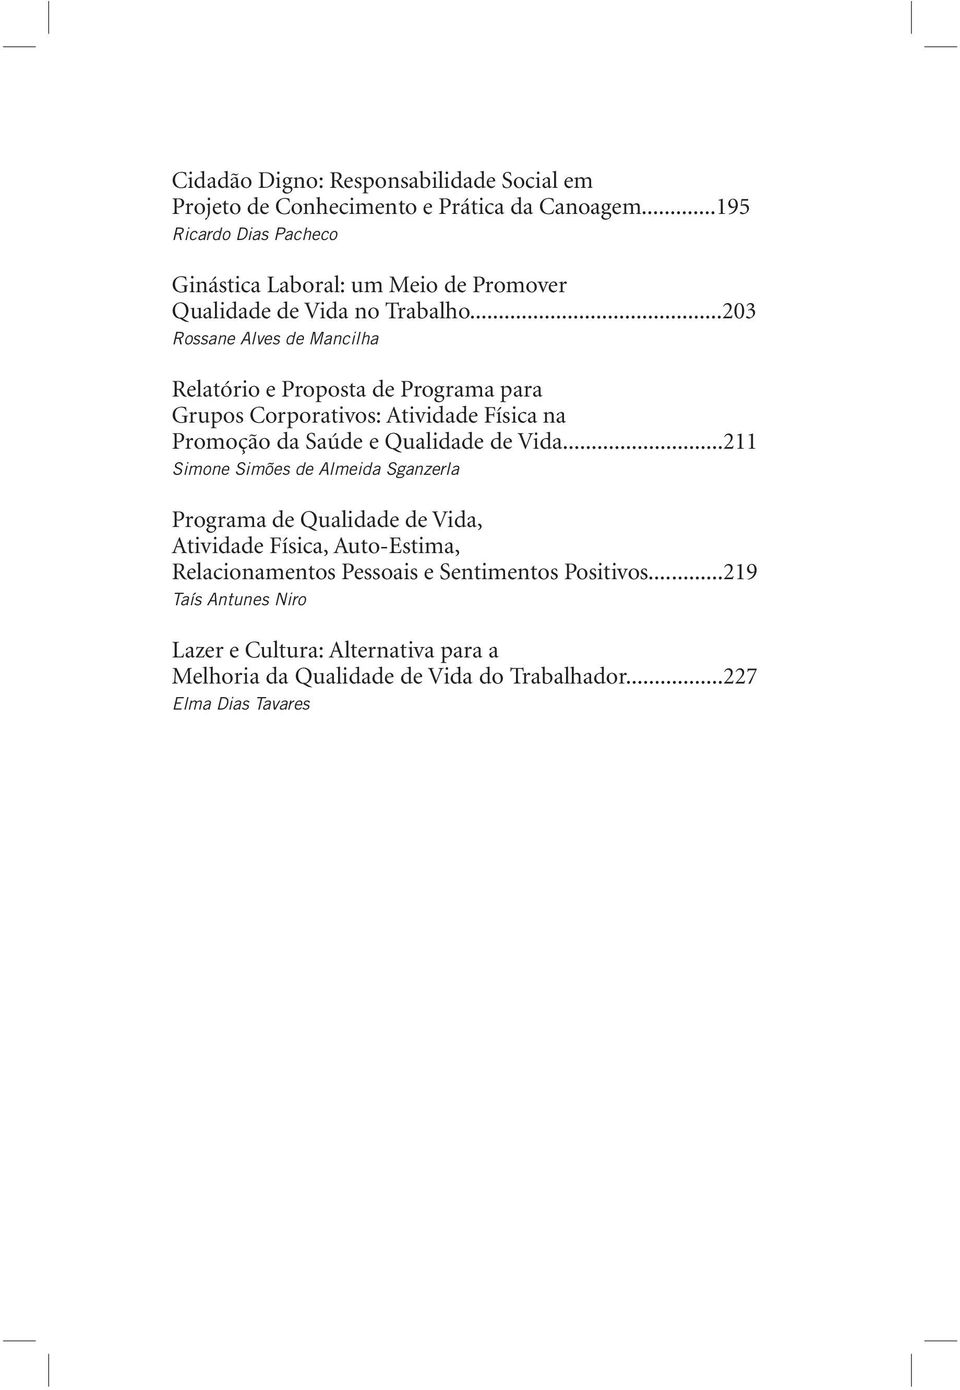 ..203 Rossane Alves de Mancilha Relatório e Proposta de Programa para Grupos Corporativos: Atividade Física na Promoção da Saúde e Qualidade de Vida.